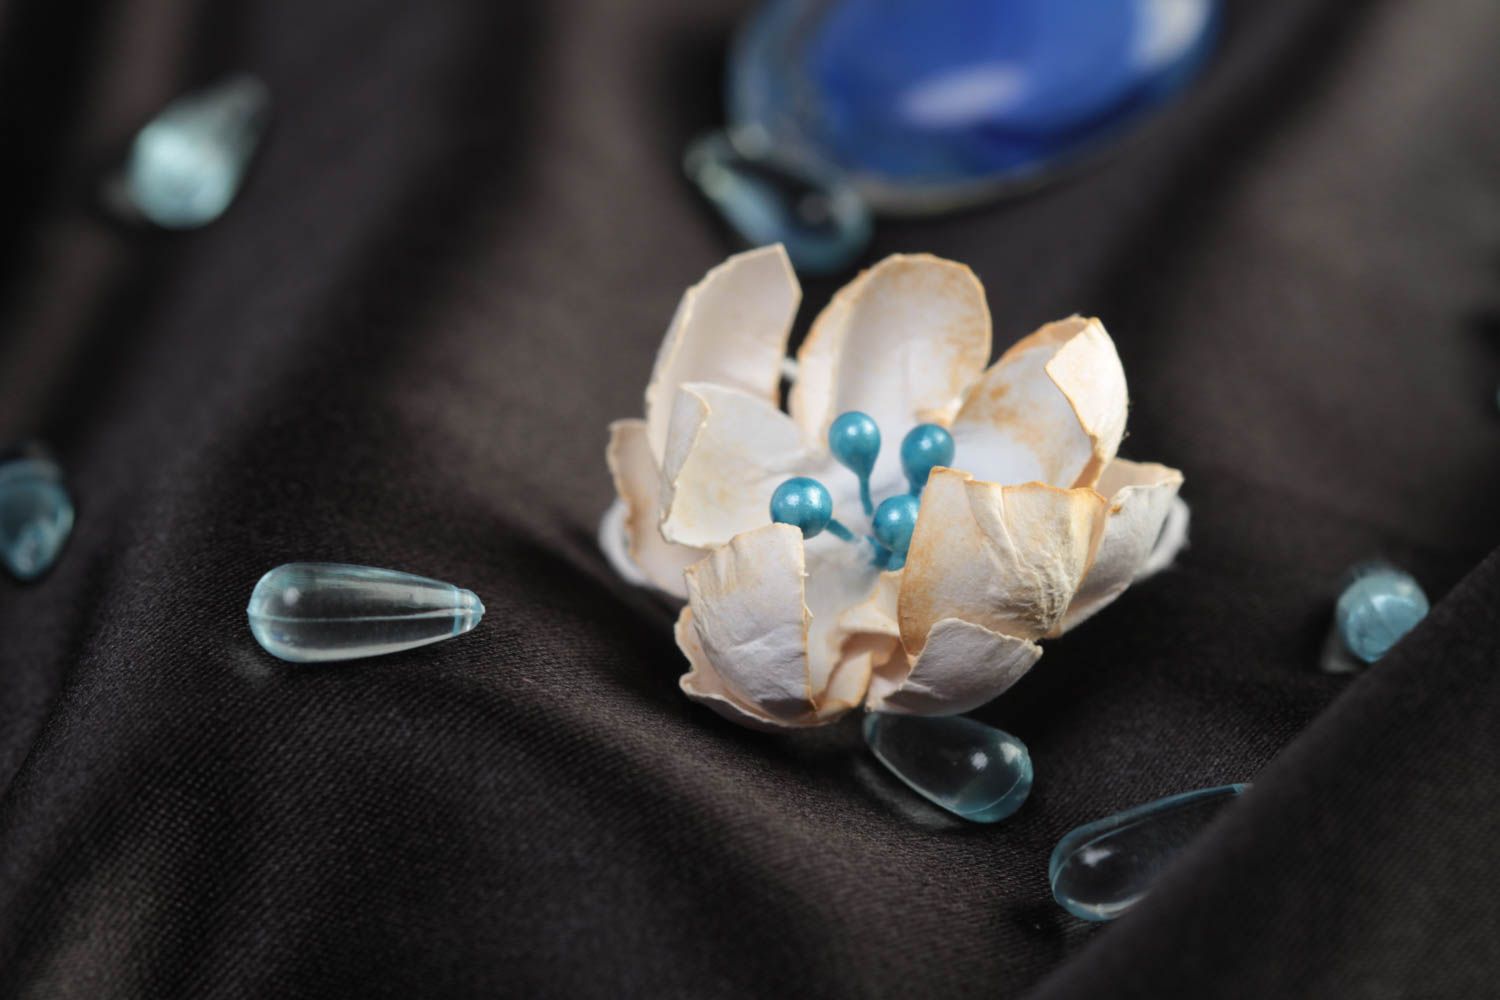 Цветок скрапбукинг бежевый красивый с голубыми тычинками маленький ручная работа фото 1